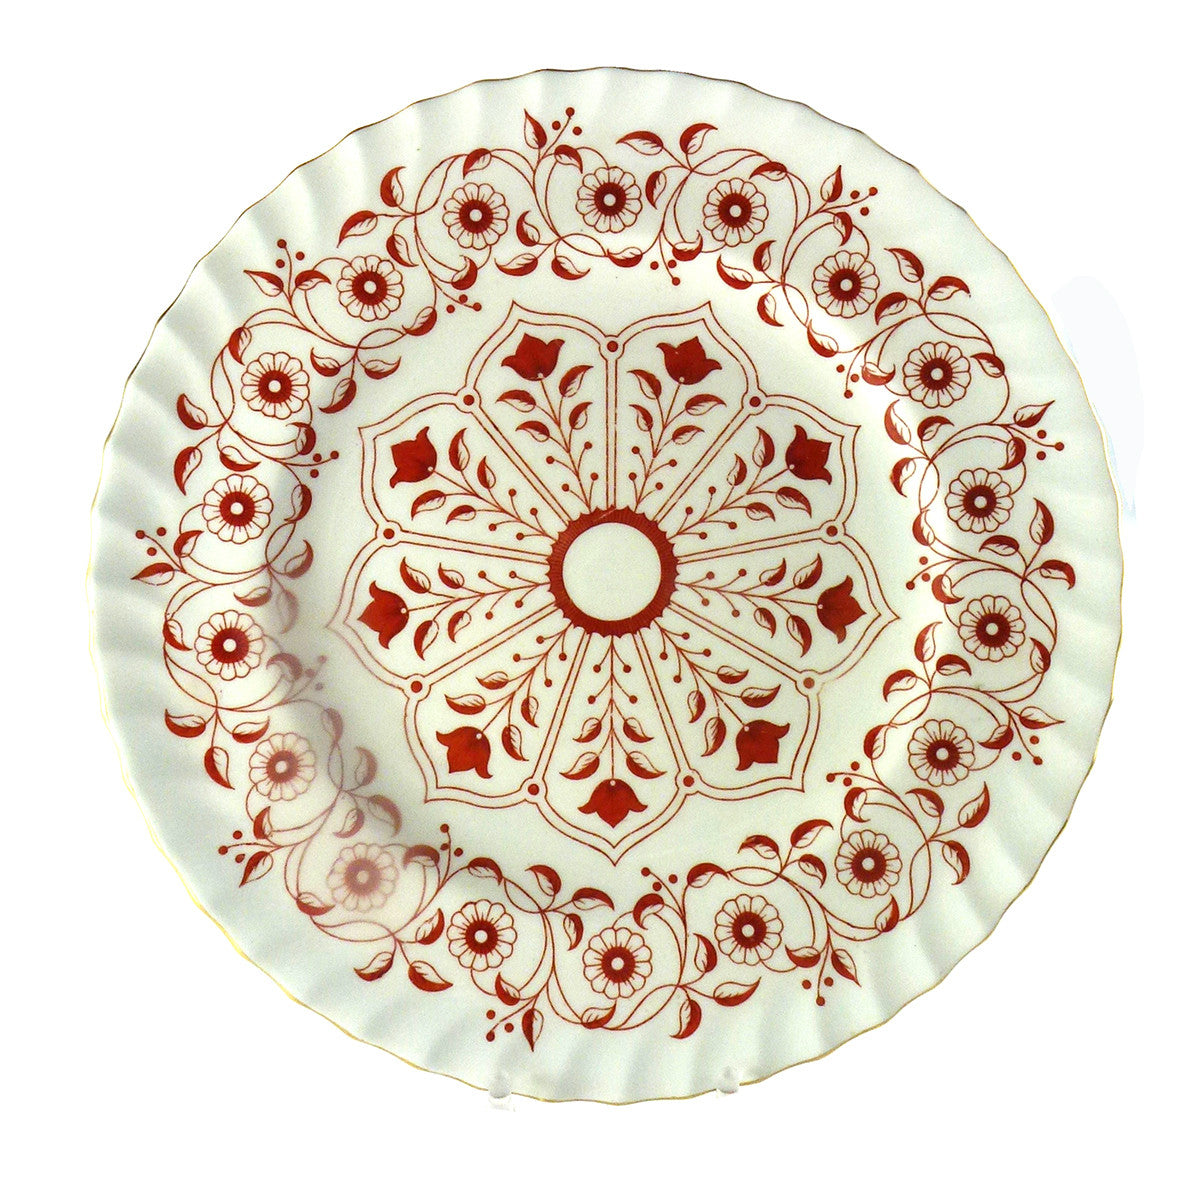 SOLD Royal Crown Derby Porcelain Rougemont Pattern Dinner Plates 10.5" Diameter Set of 16